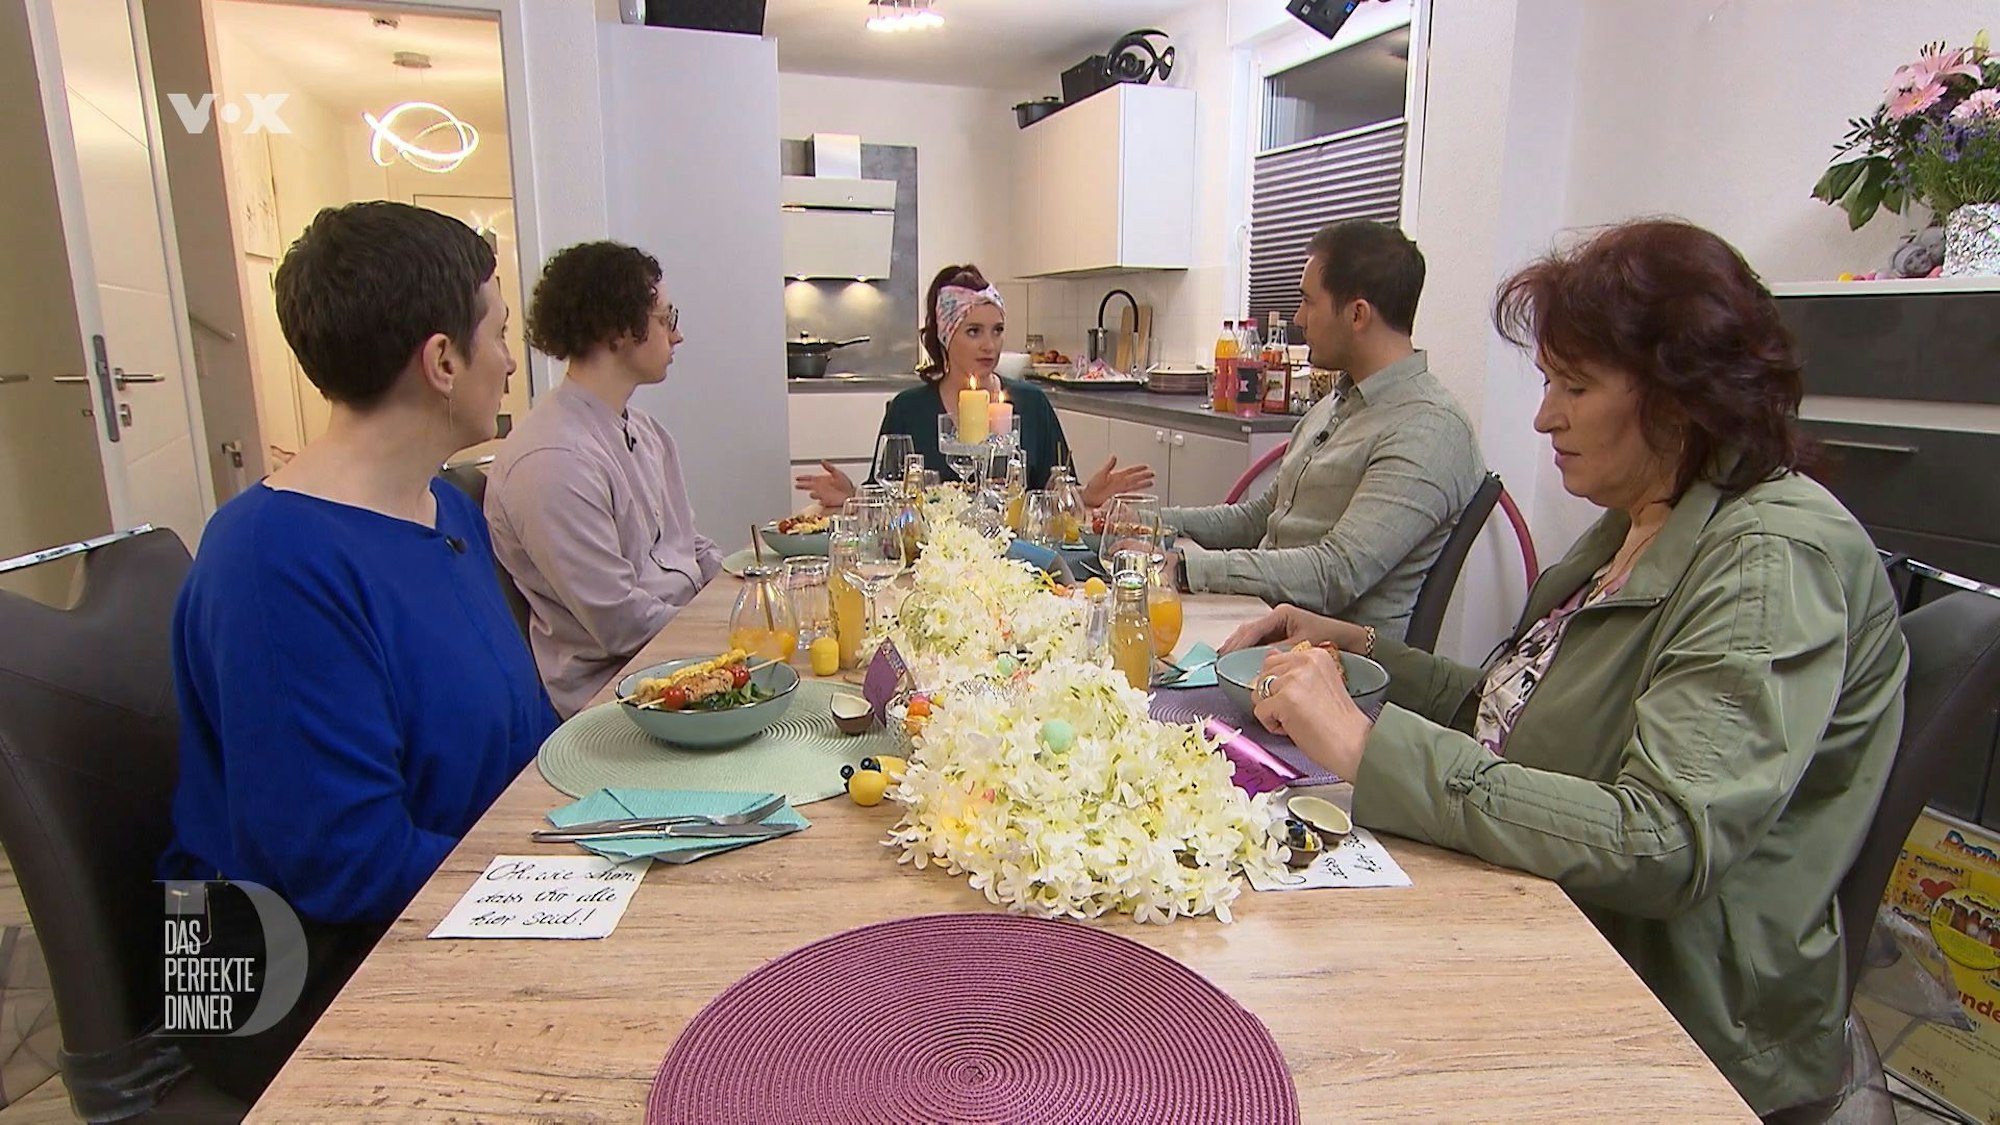 Die Gastgeberin erklärt den Gästen ihre Vorspeise, von links: Ilka, Thomas, Gastgeberin Jess, Domenik und Mechthild.